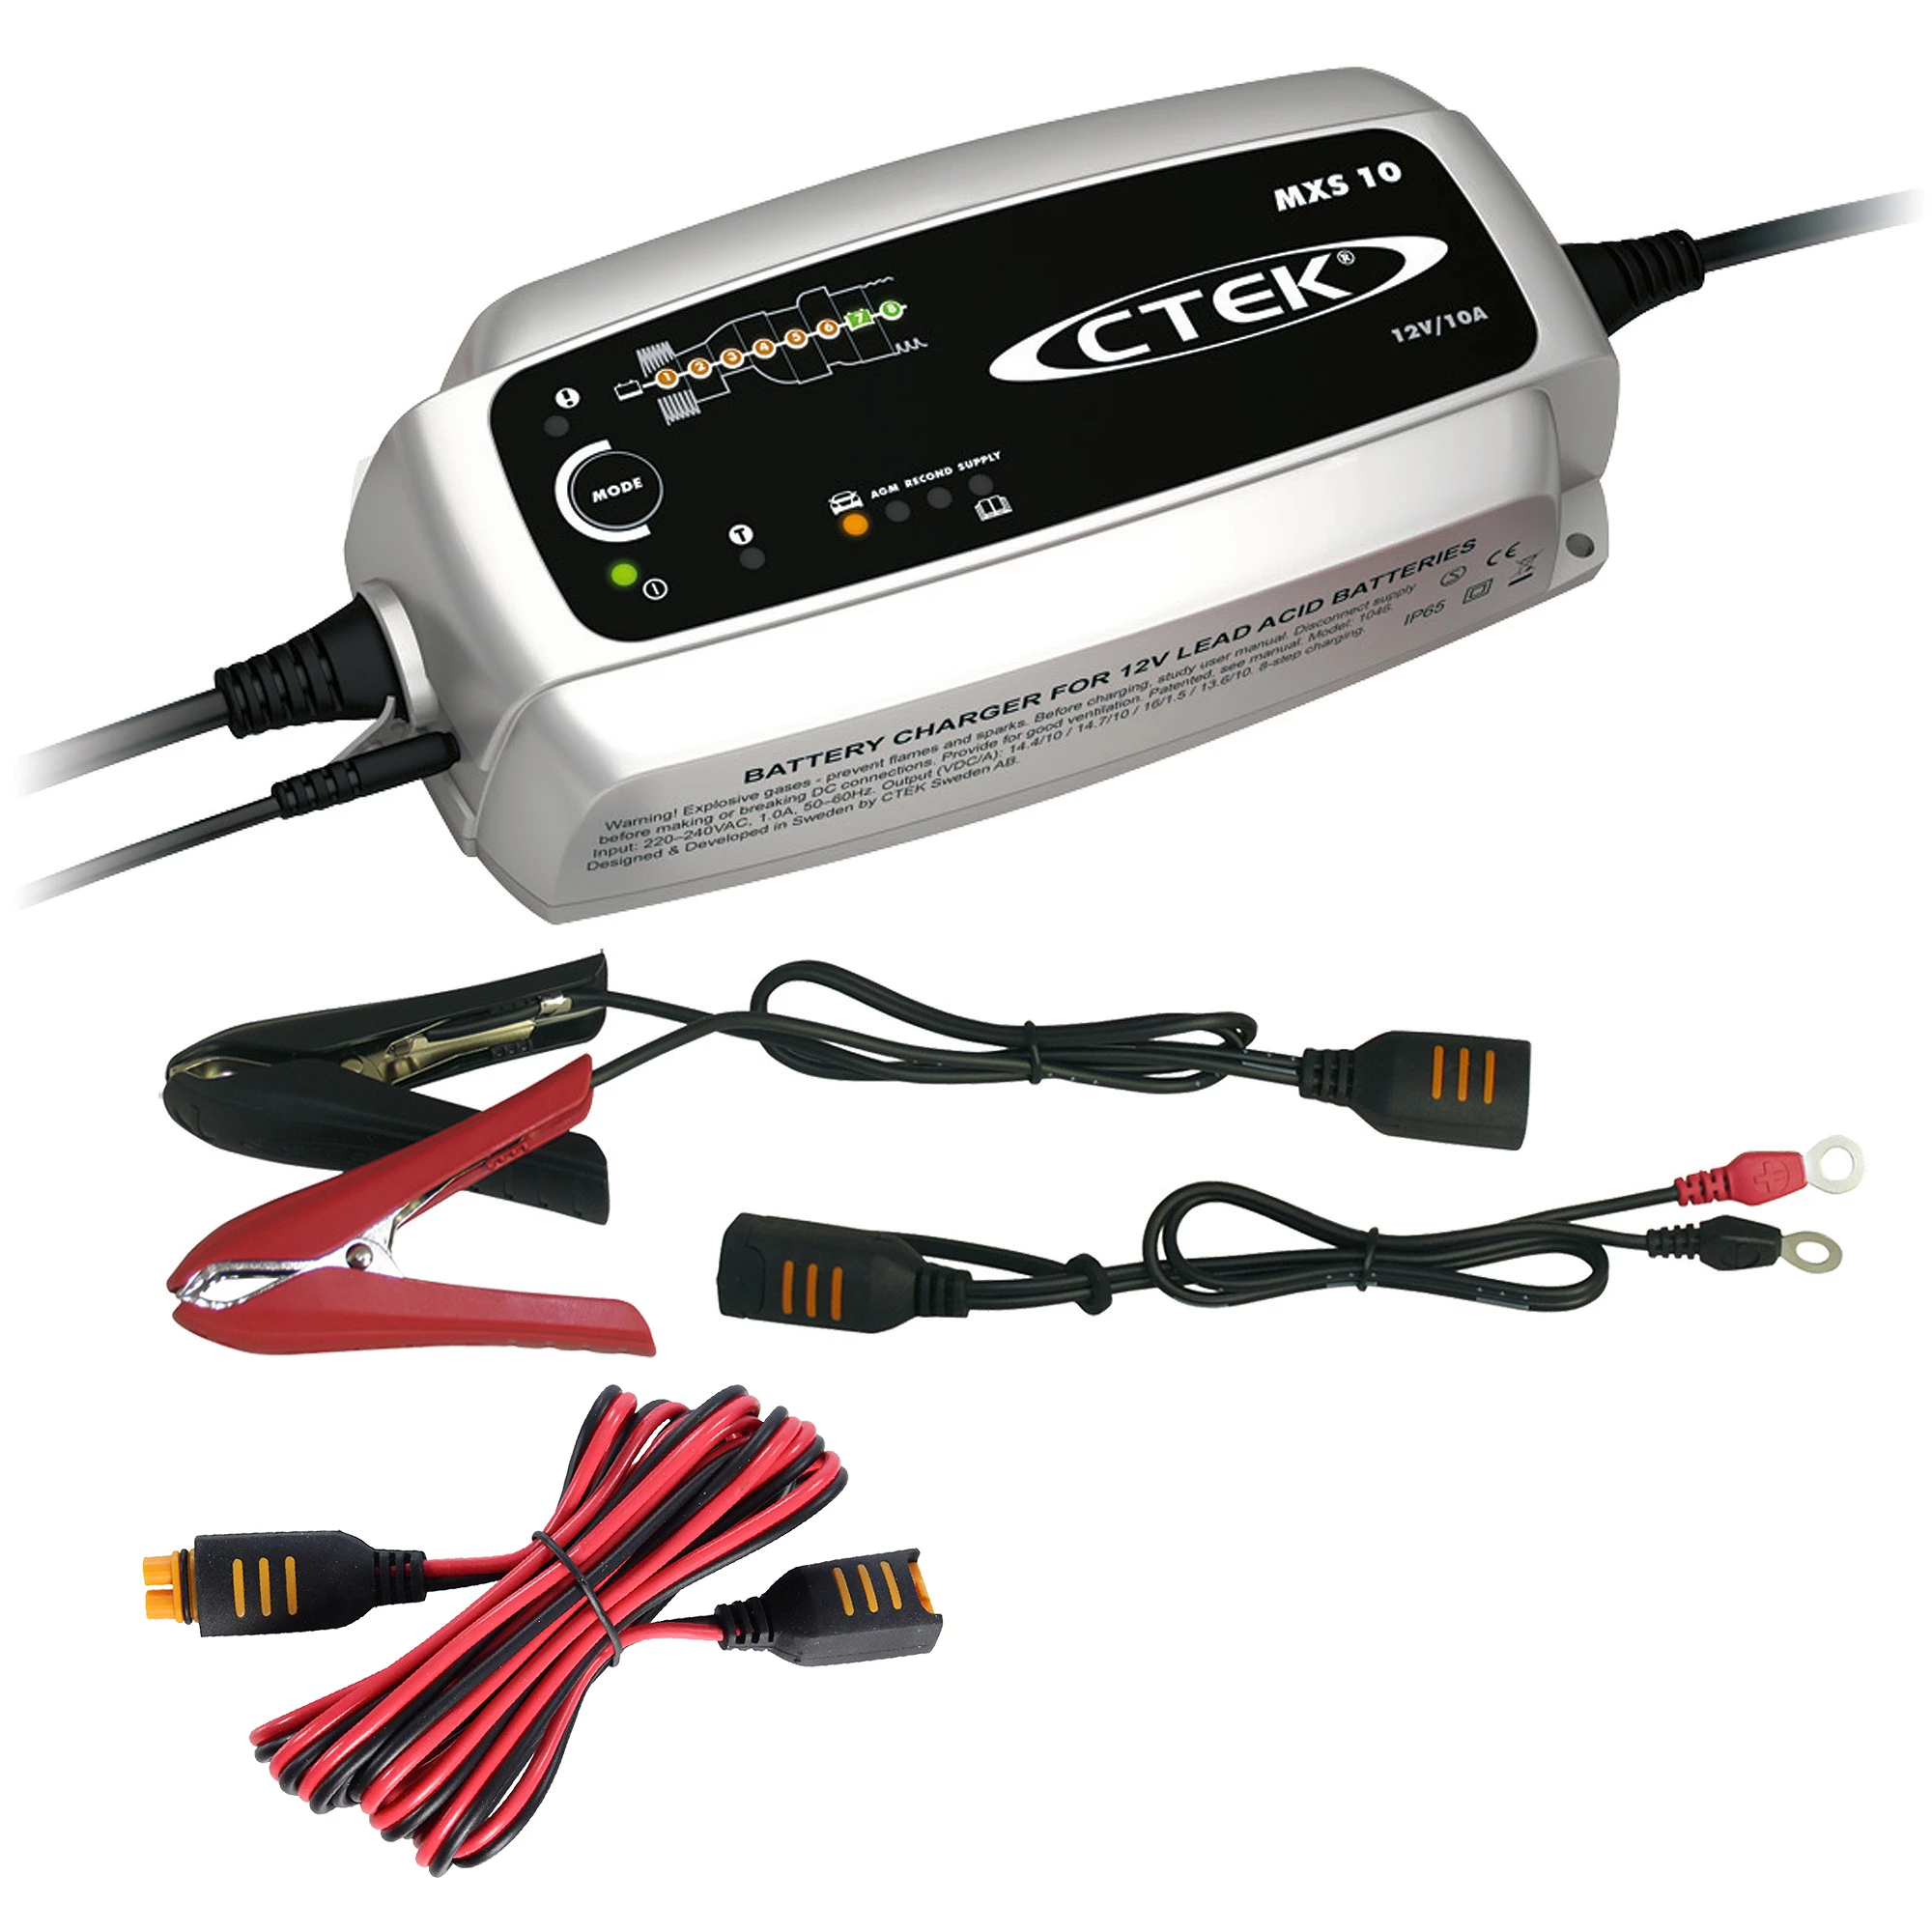 CTEK Ladekabel Verlängerung 2,5 m bis zu 10 A - CTEK Batterie